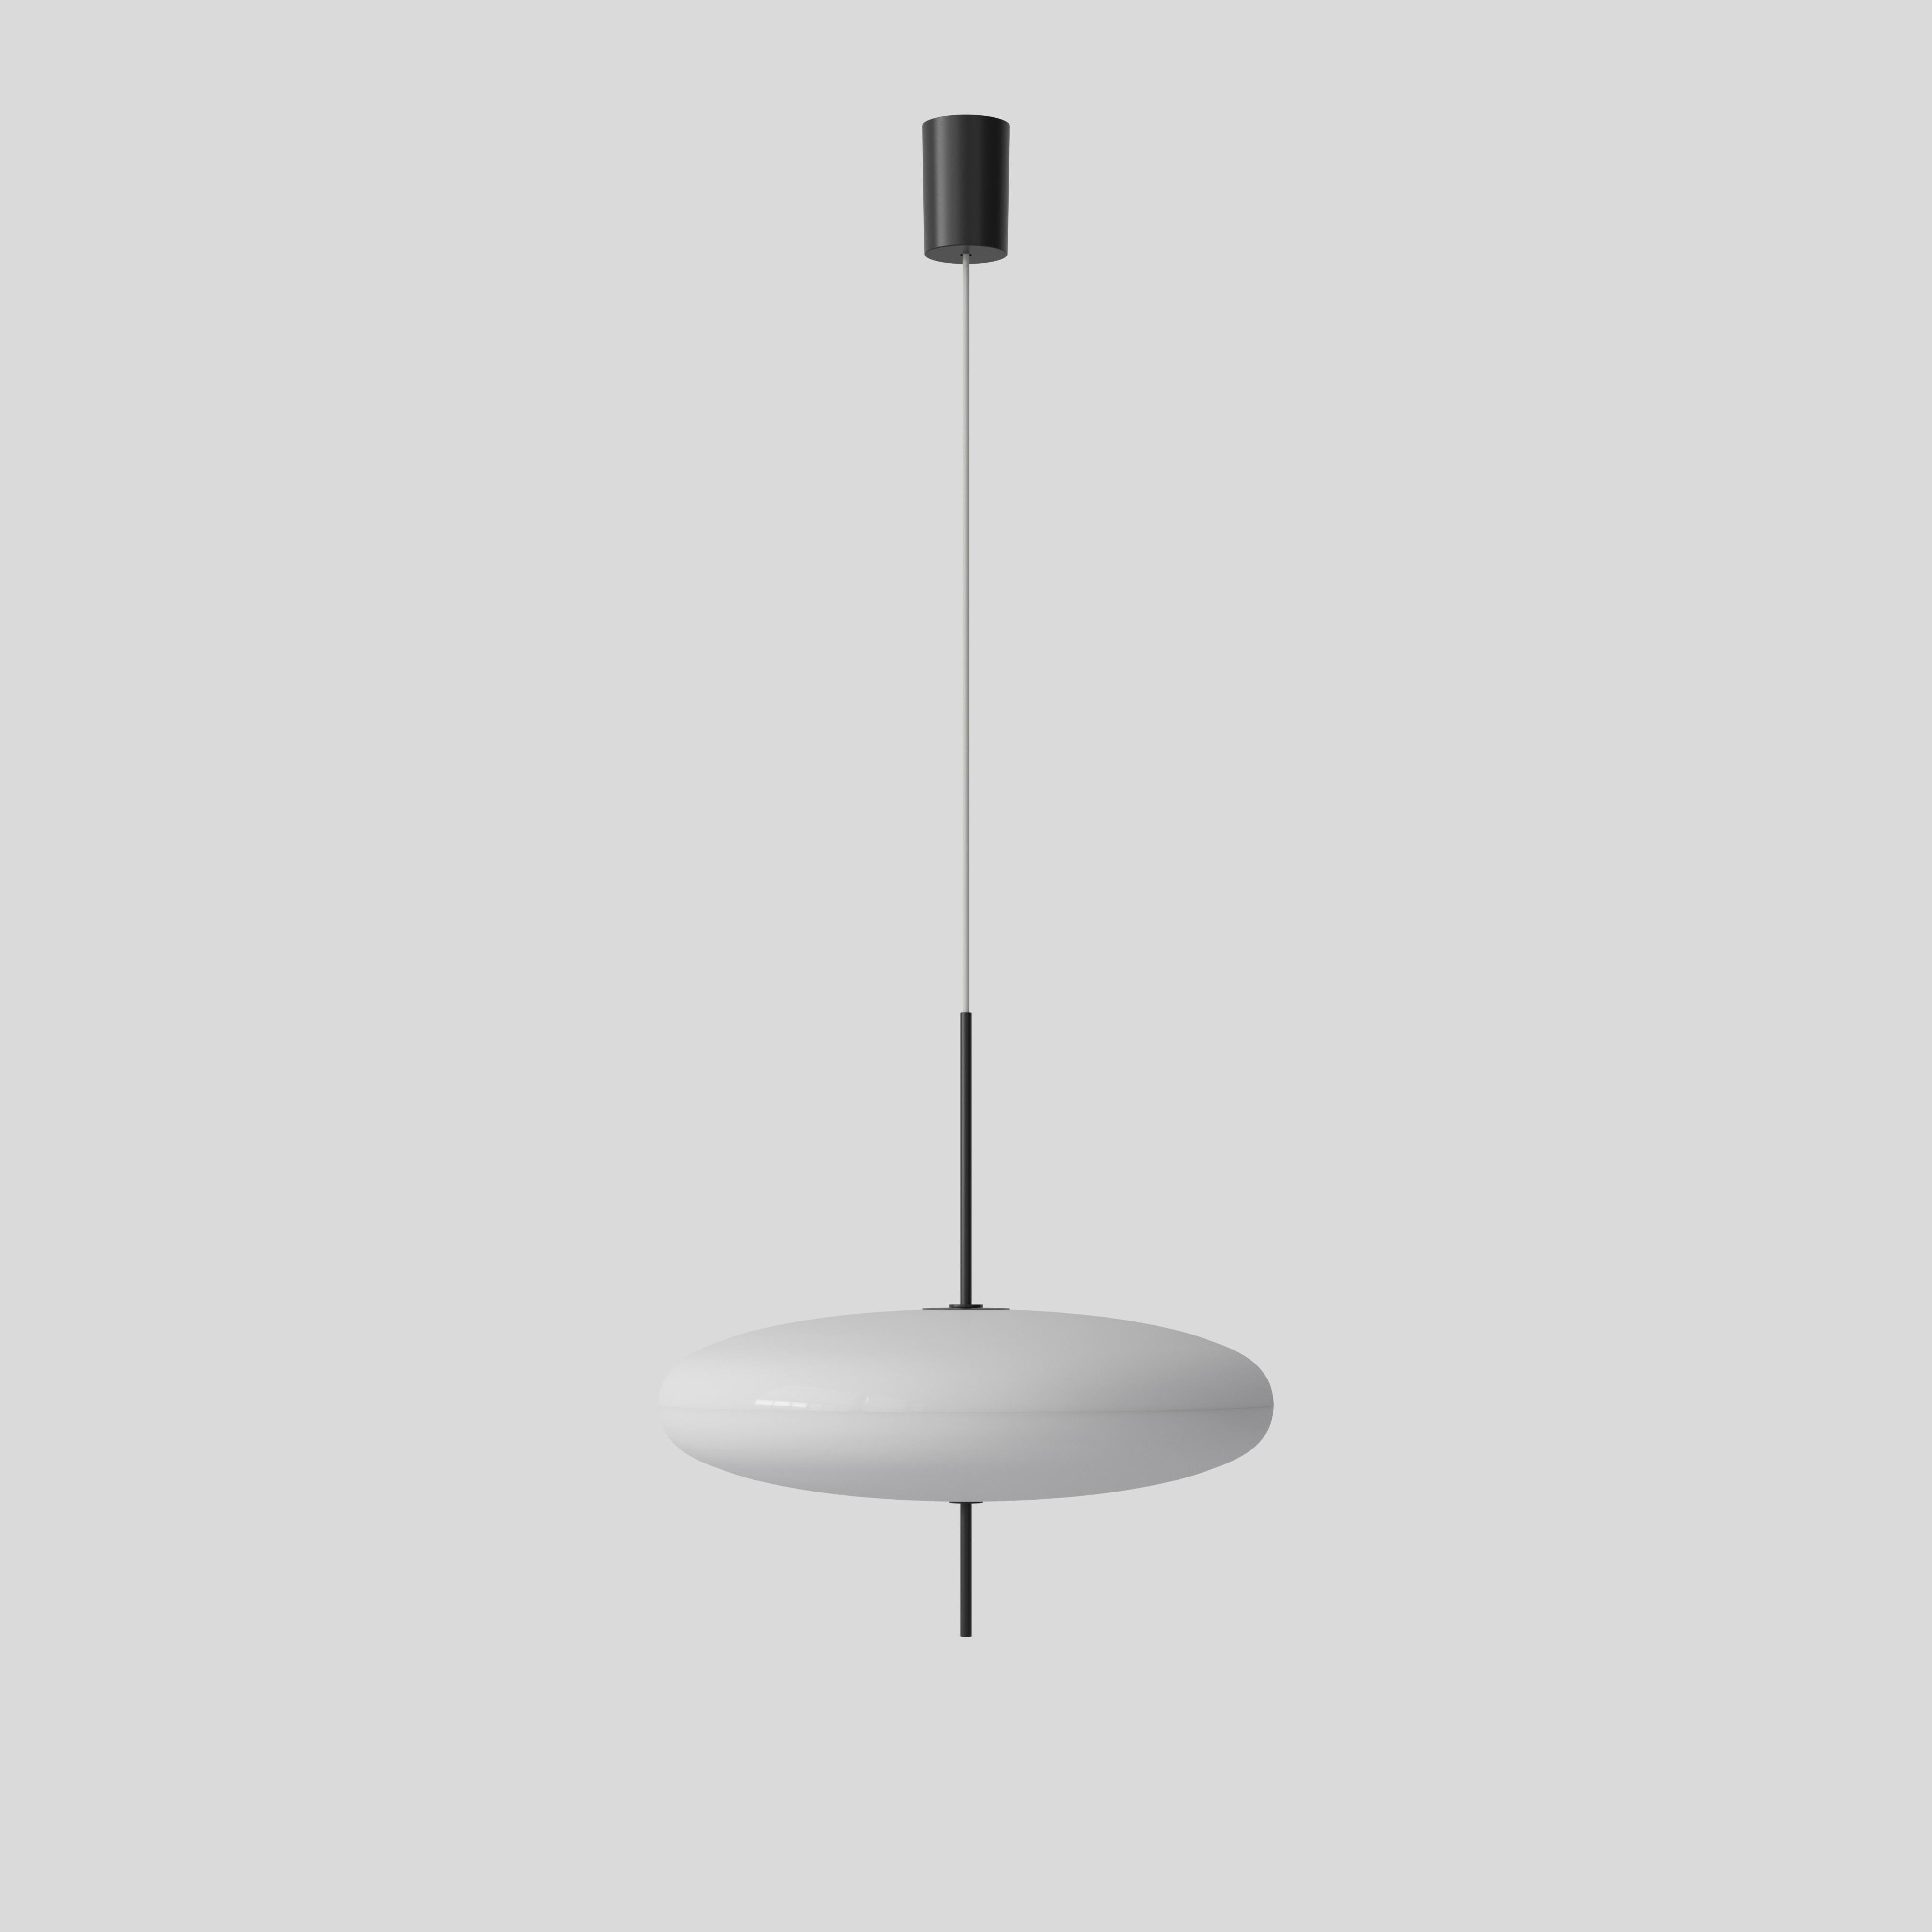 Italian Set 3 Gino Sarfatti Lamp Model 2065 White Diffuser, Black Hardware, White Cable